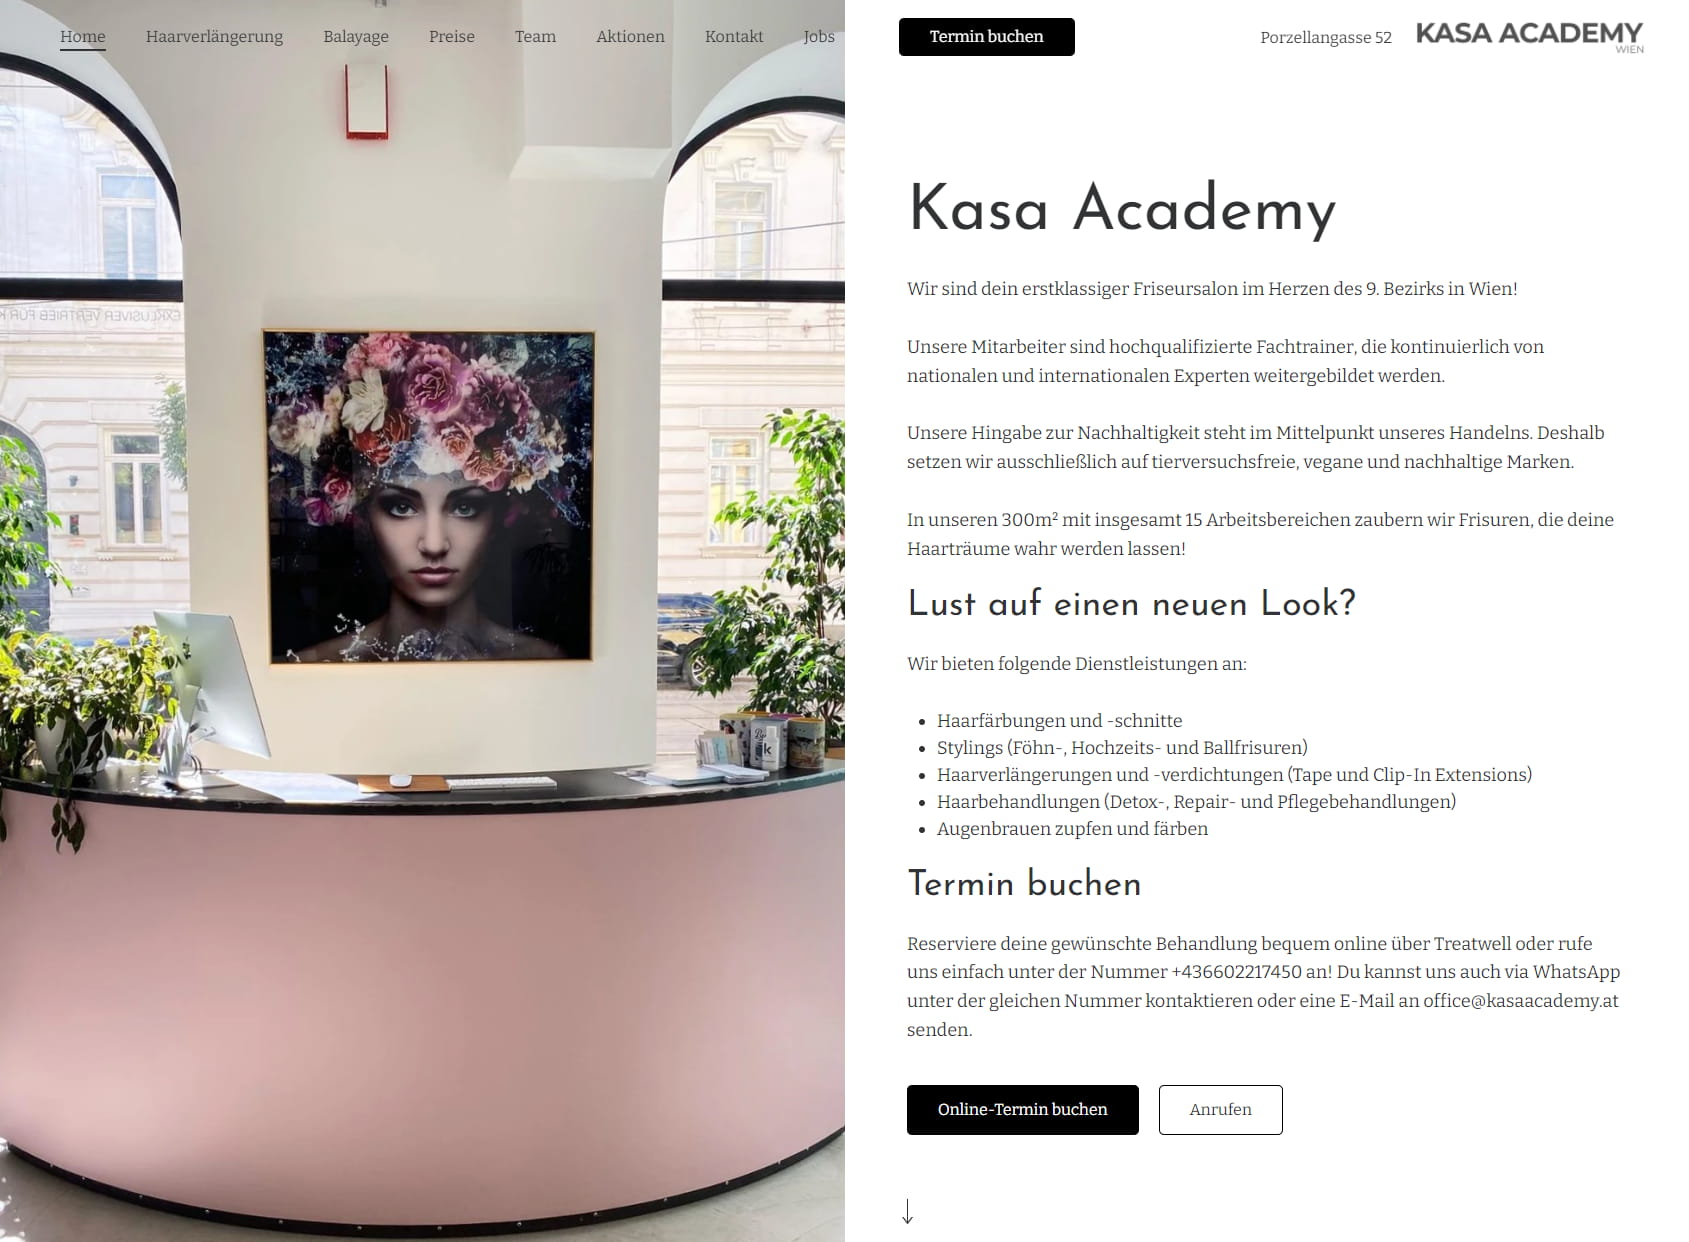 Kasa Academy Wien